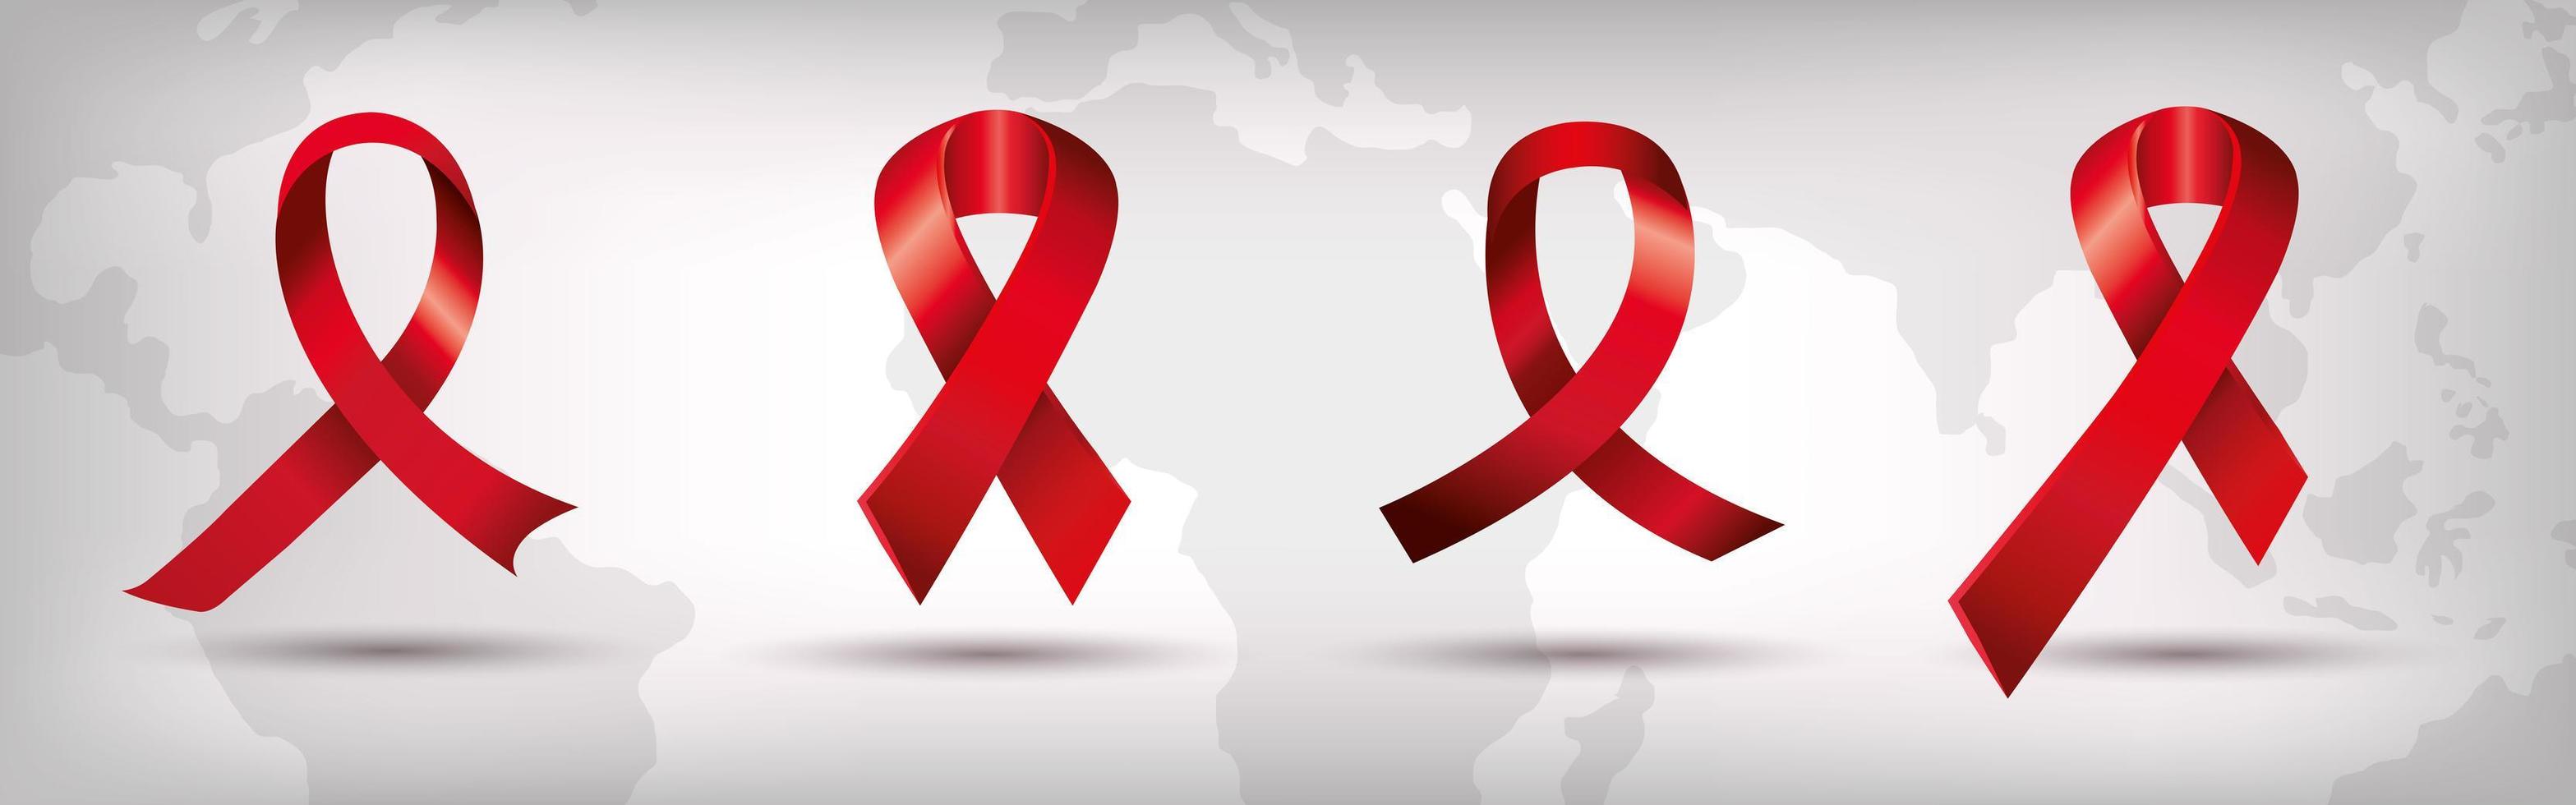 set van aids dag bewustzijnslinten geïsoleerde pictogram vector